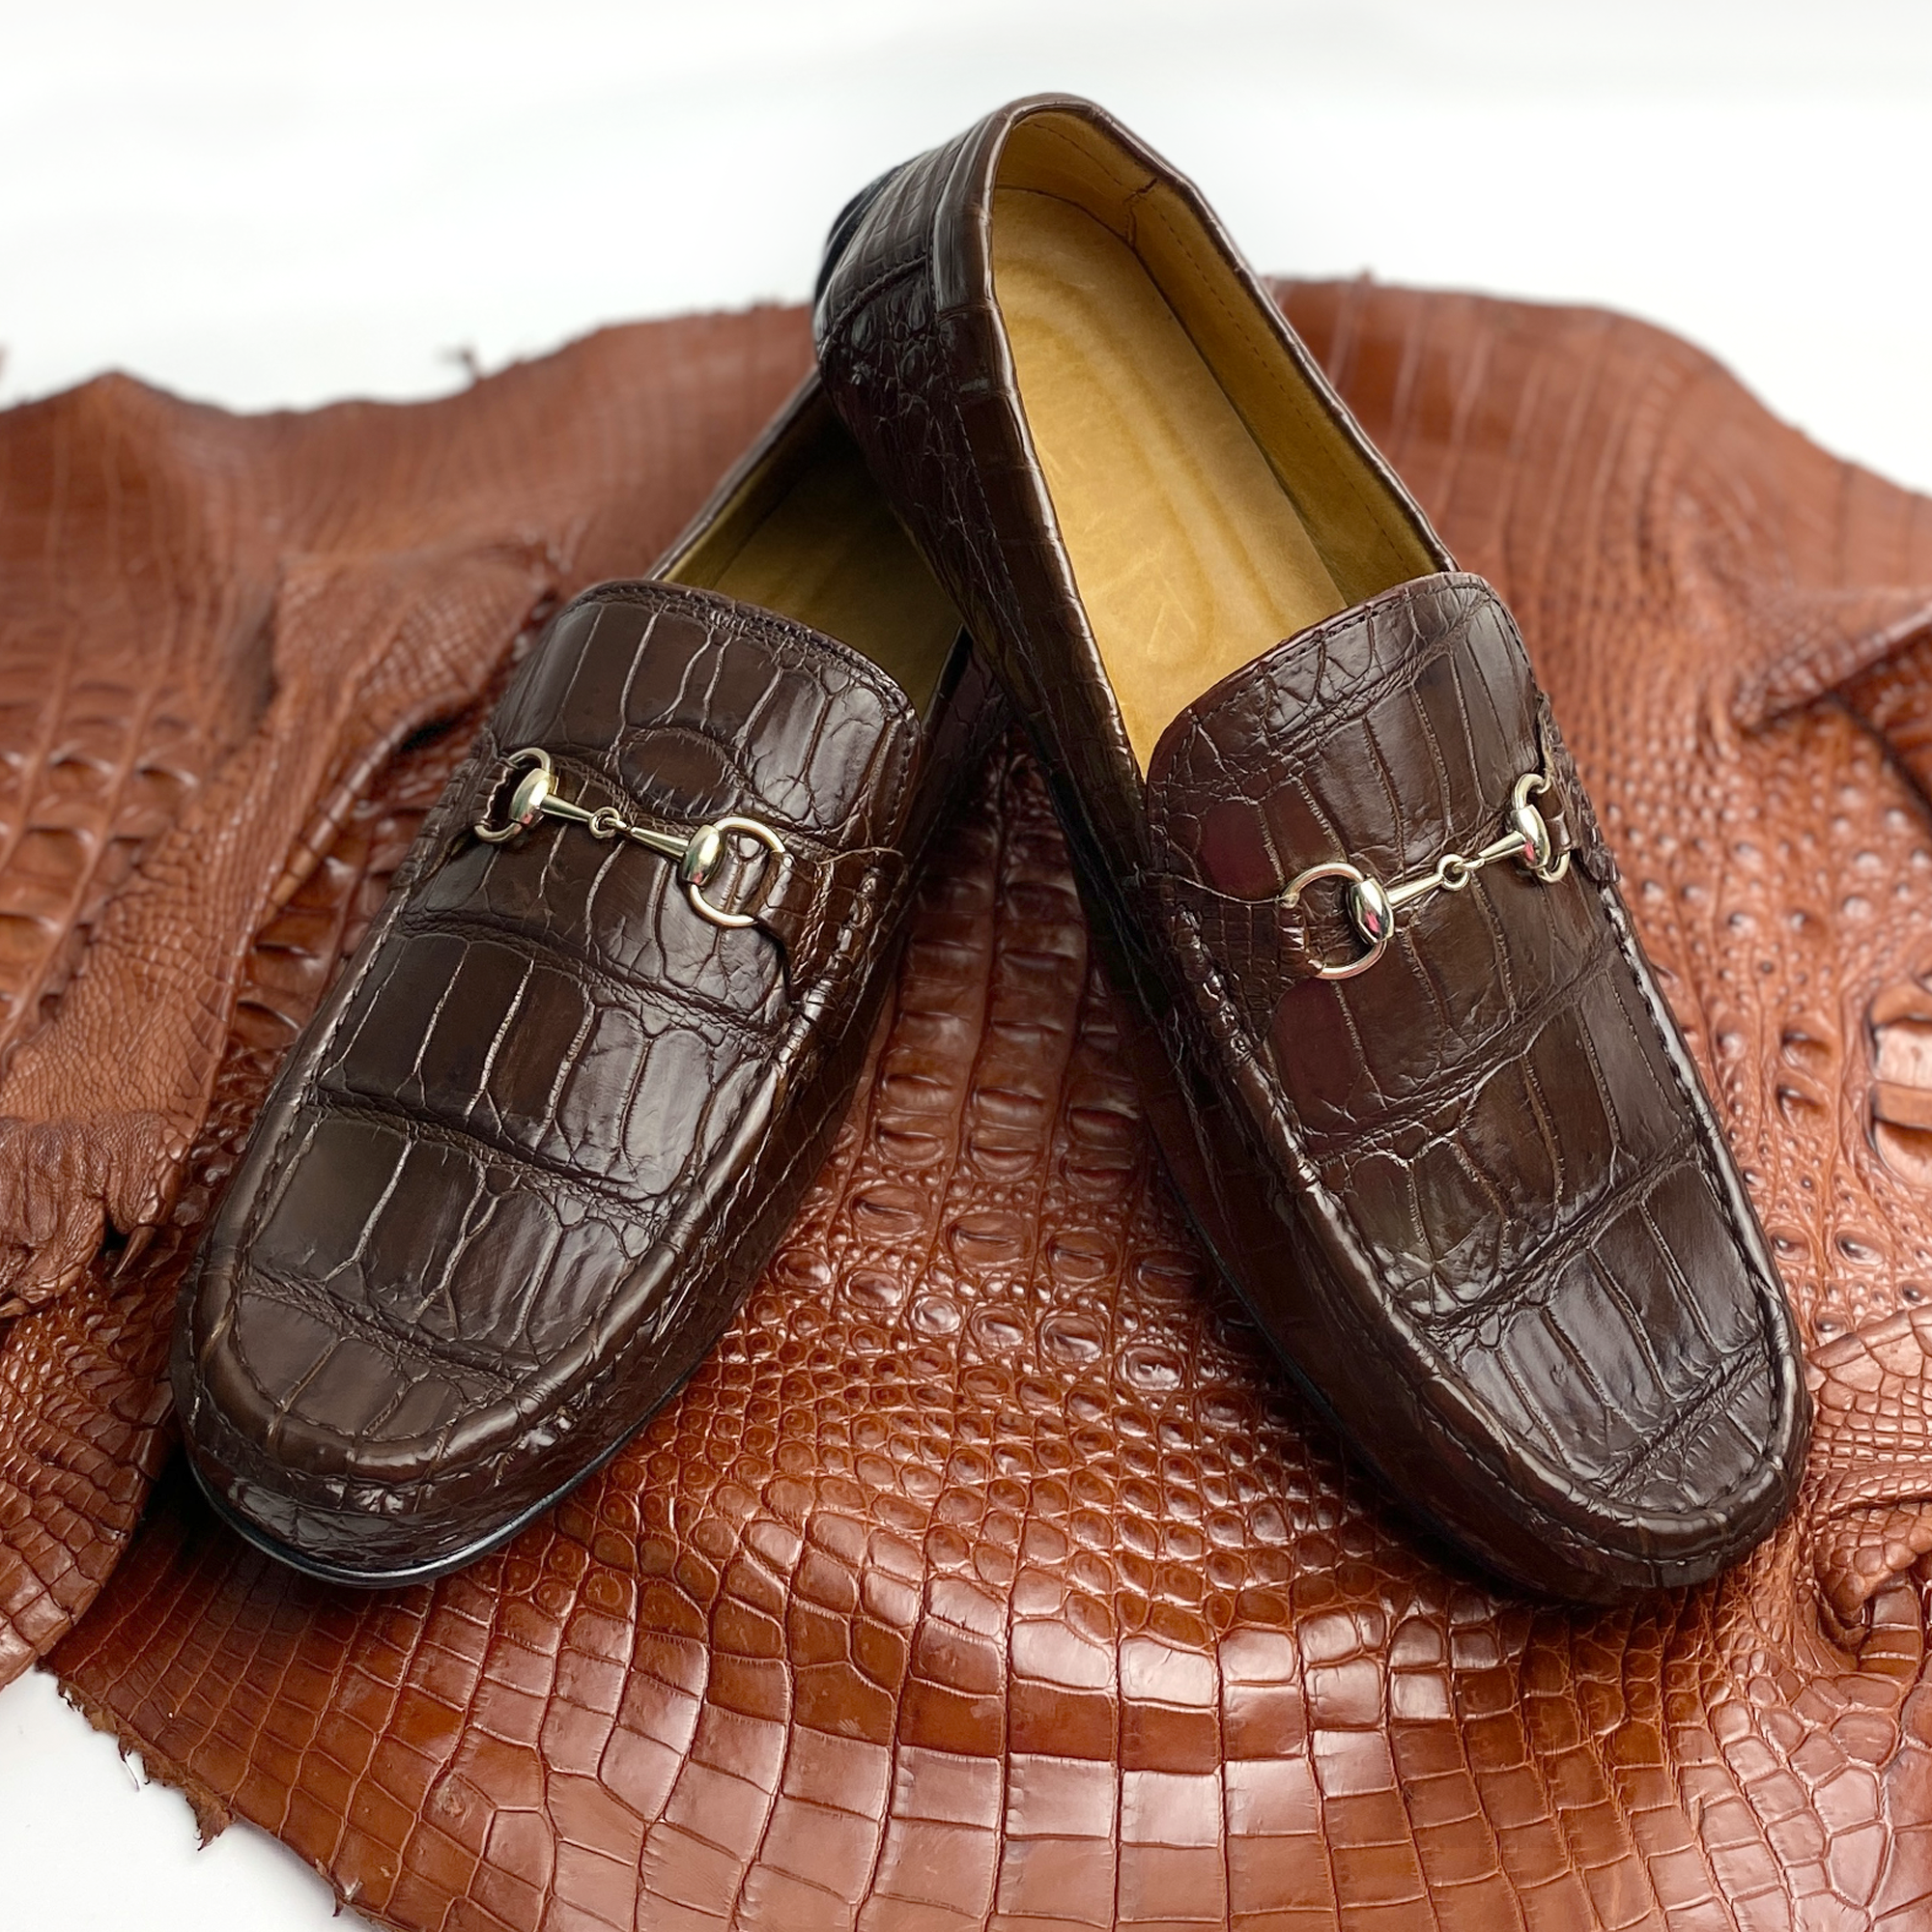 Men's Brown Alligator Leather Horsebit Loafers | Belly Crocodile Skin Loafer Shoes For Men - SH23C42